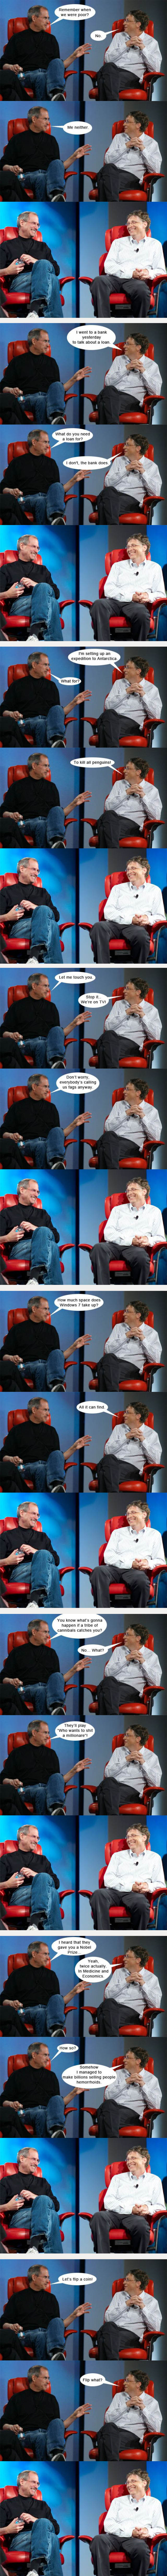 Steve Jobs et Bill Gates seraient ils plus marrants qu on ne le croit ? :)